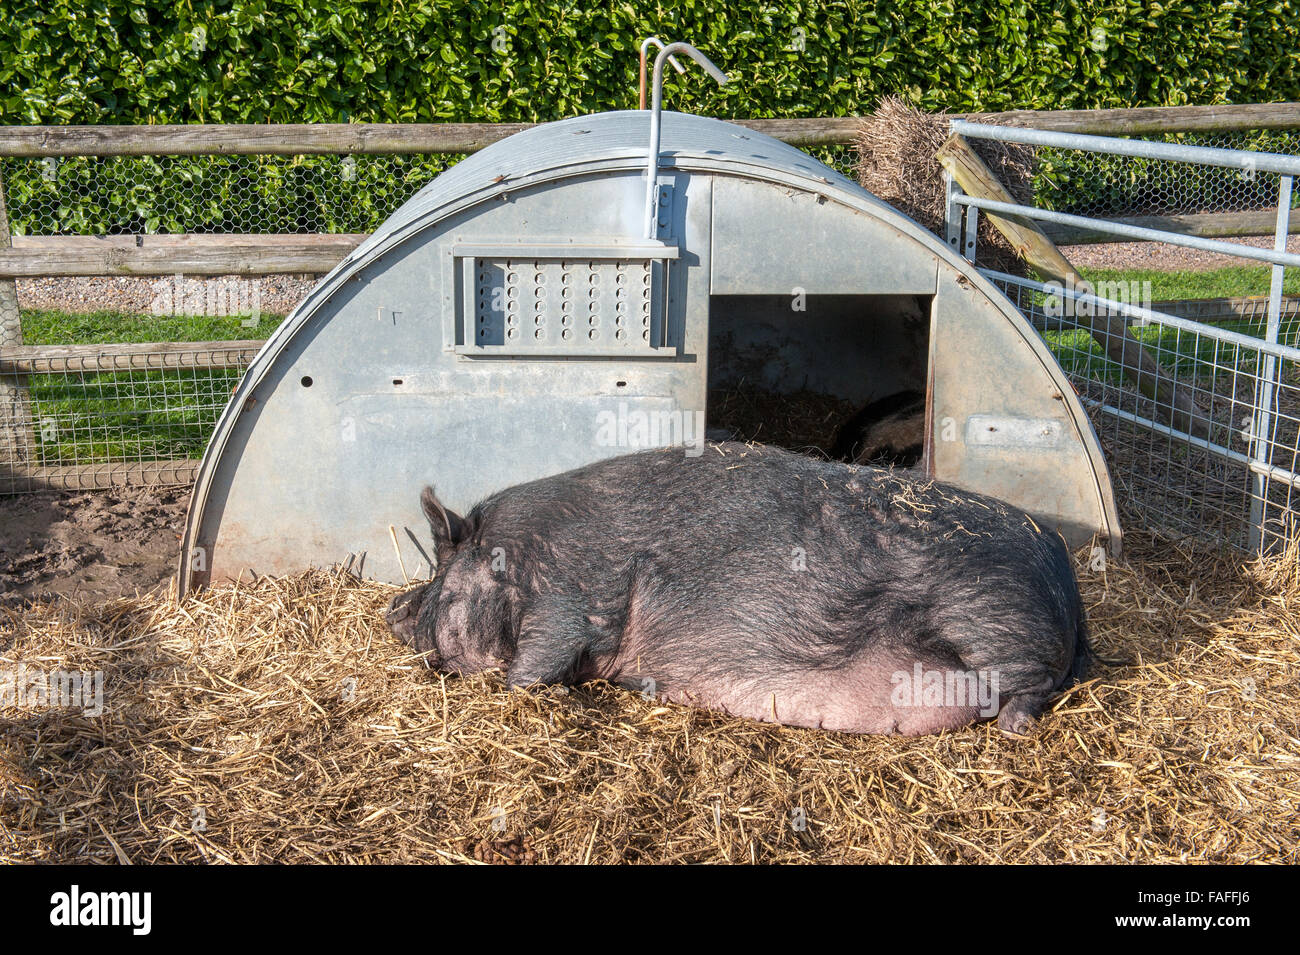 Lazy pig sentar dormido fuera choza de metal Foto de stock